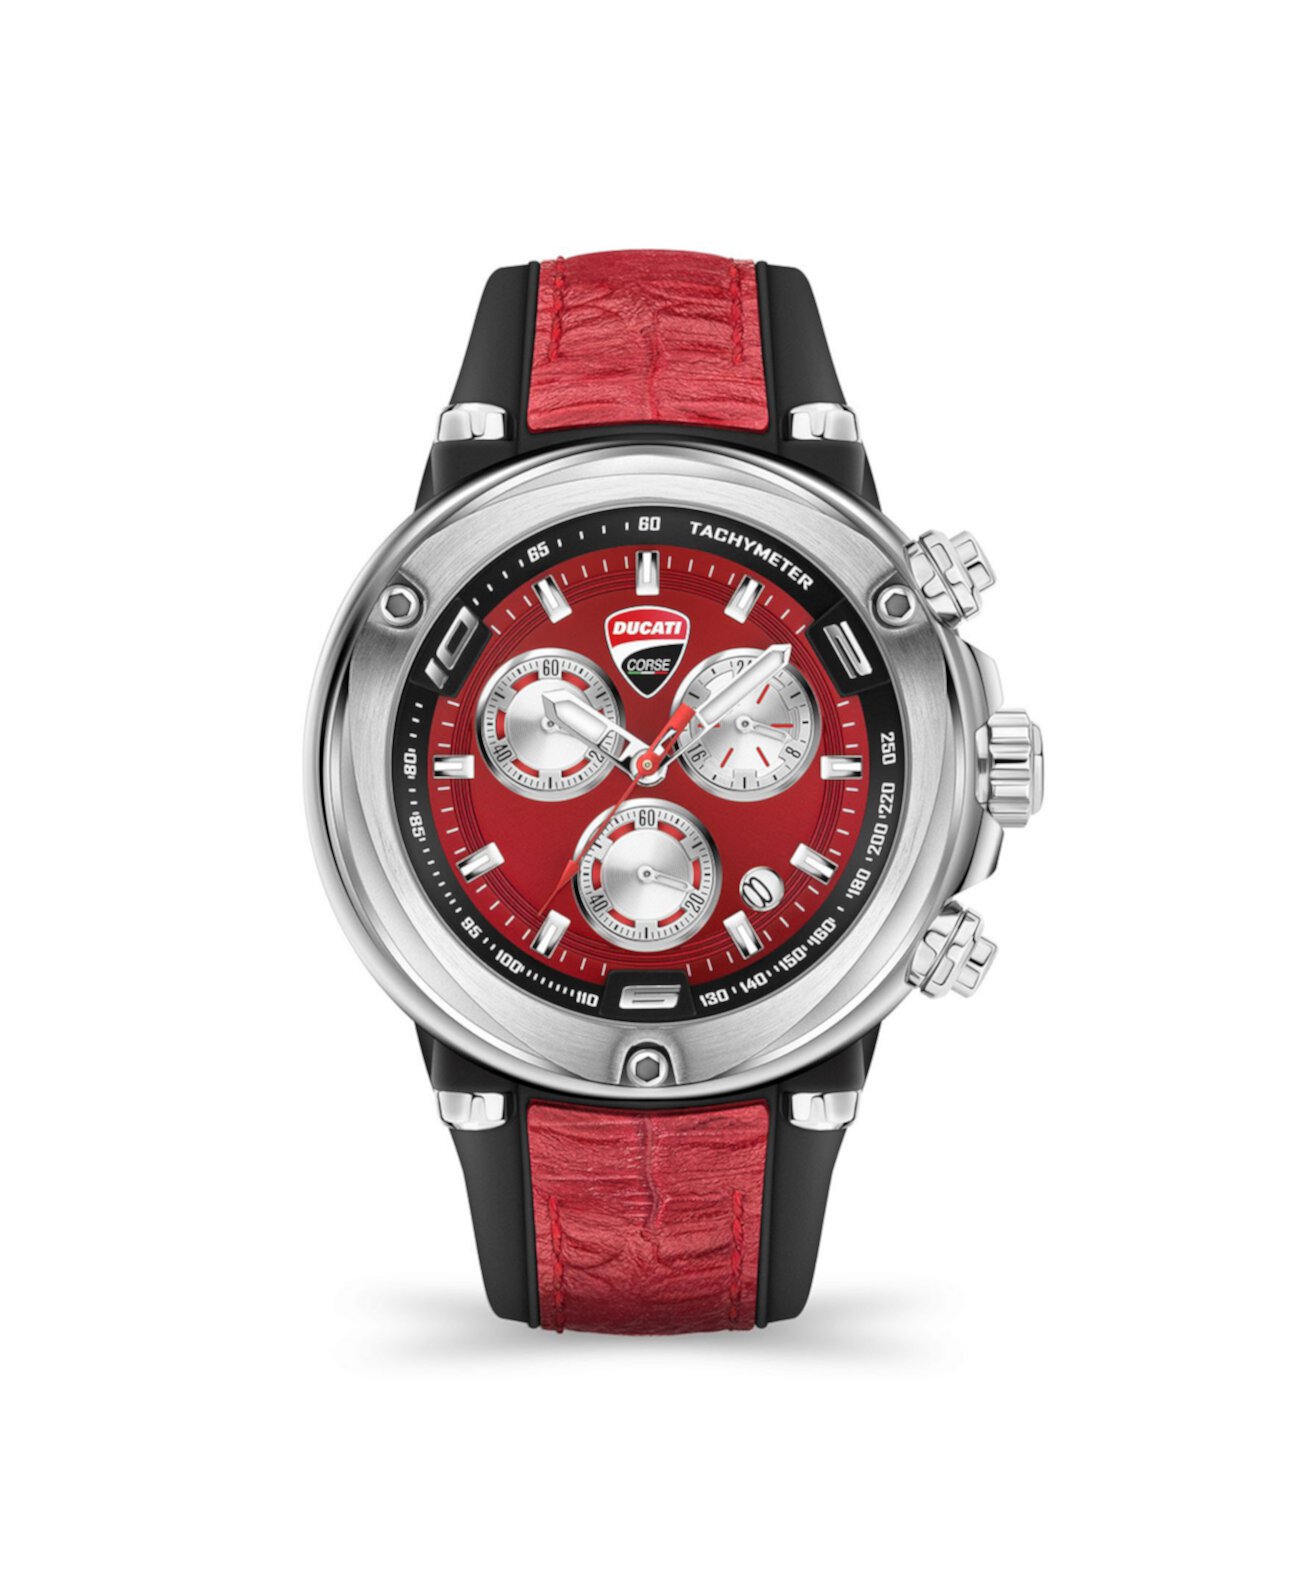 Мужские часы Partenza Chronograph с черным и красным силиконовым ремешком 49 мм Ducati Corse